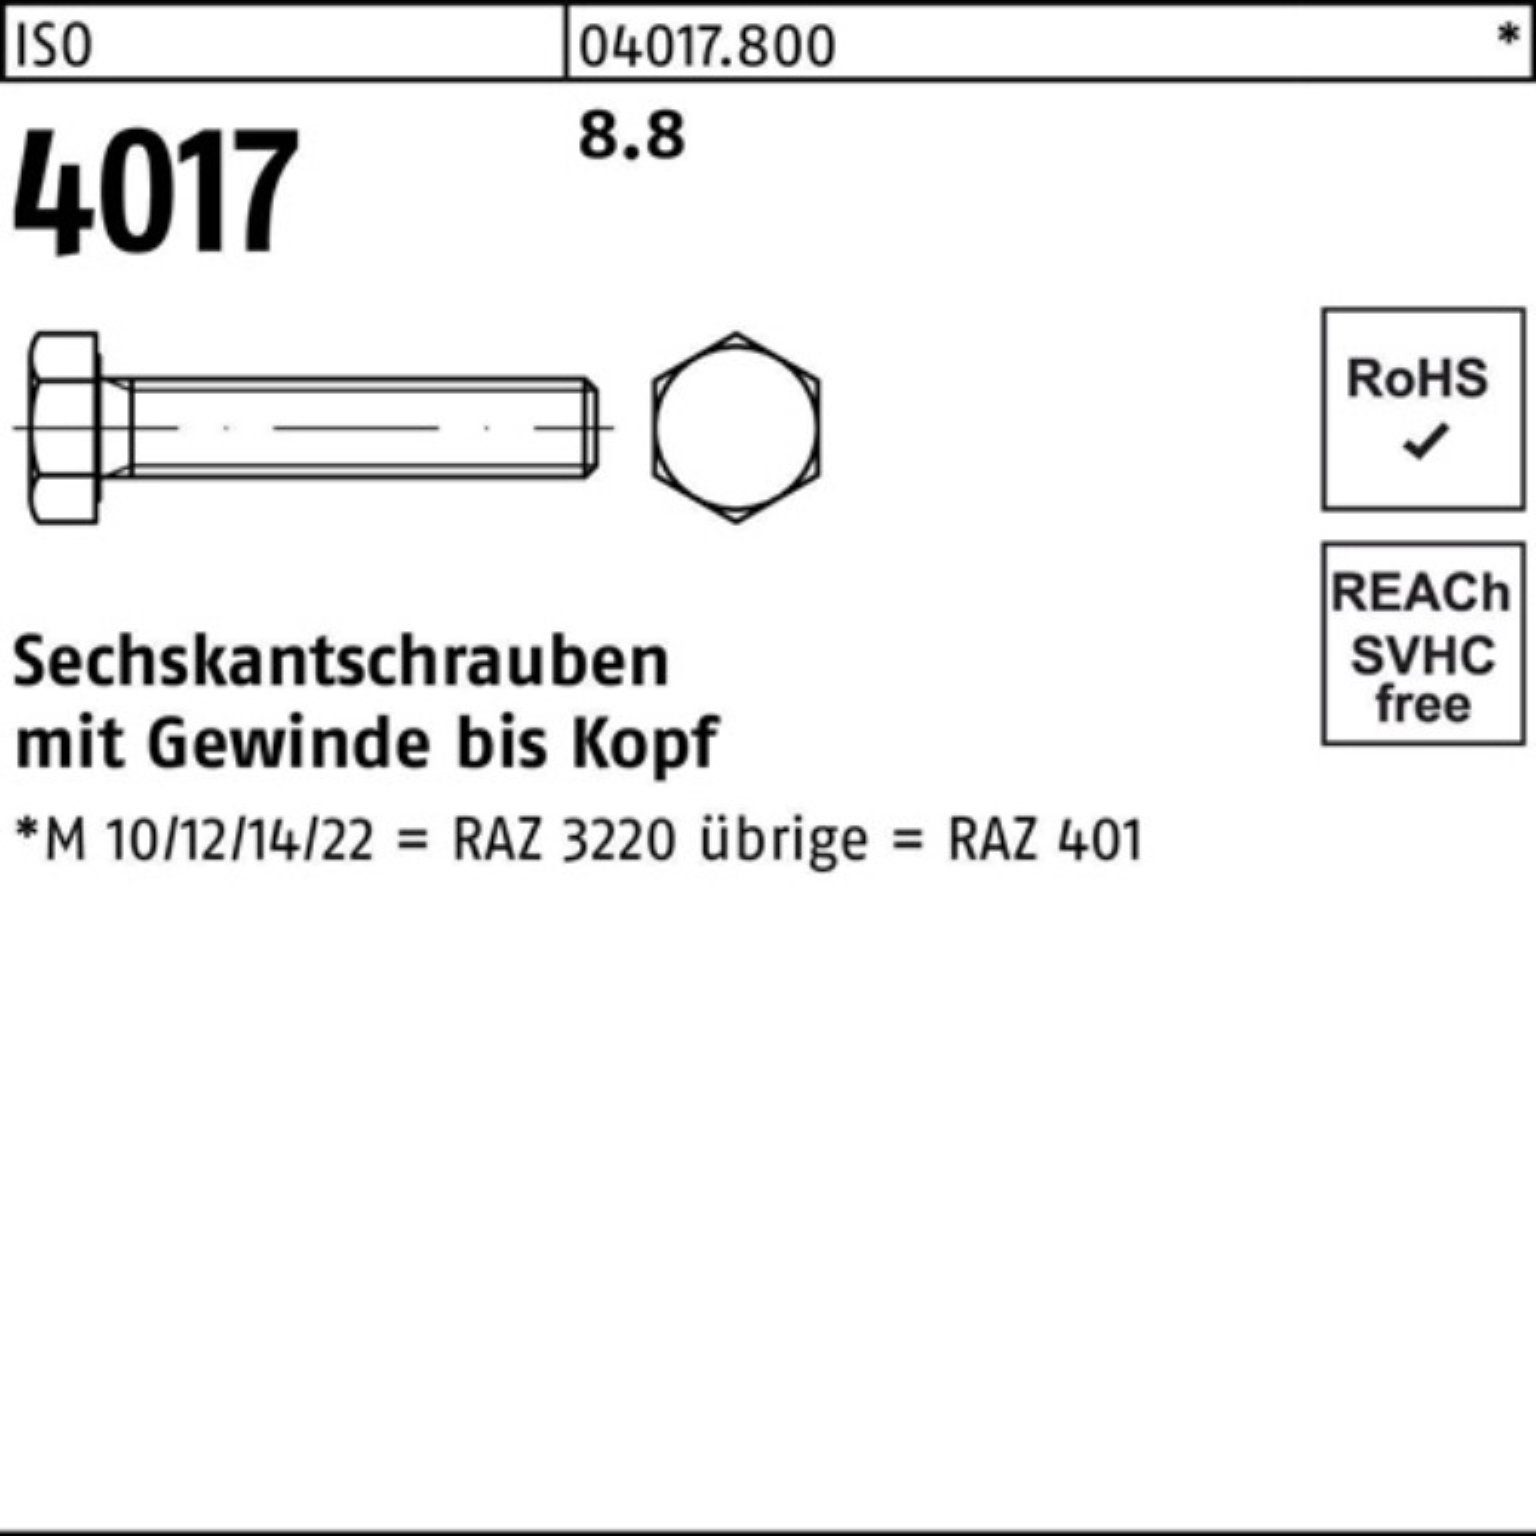 ISO Bufab Sechskantschraube Pack 401 Sechskantschraube ISO 8.8 100 4017 Stück 100er 16 M4x VG